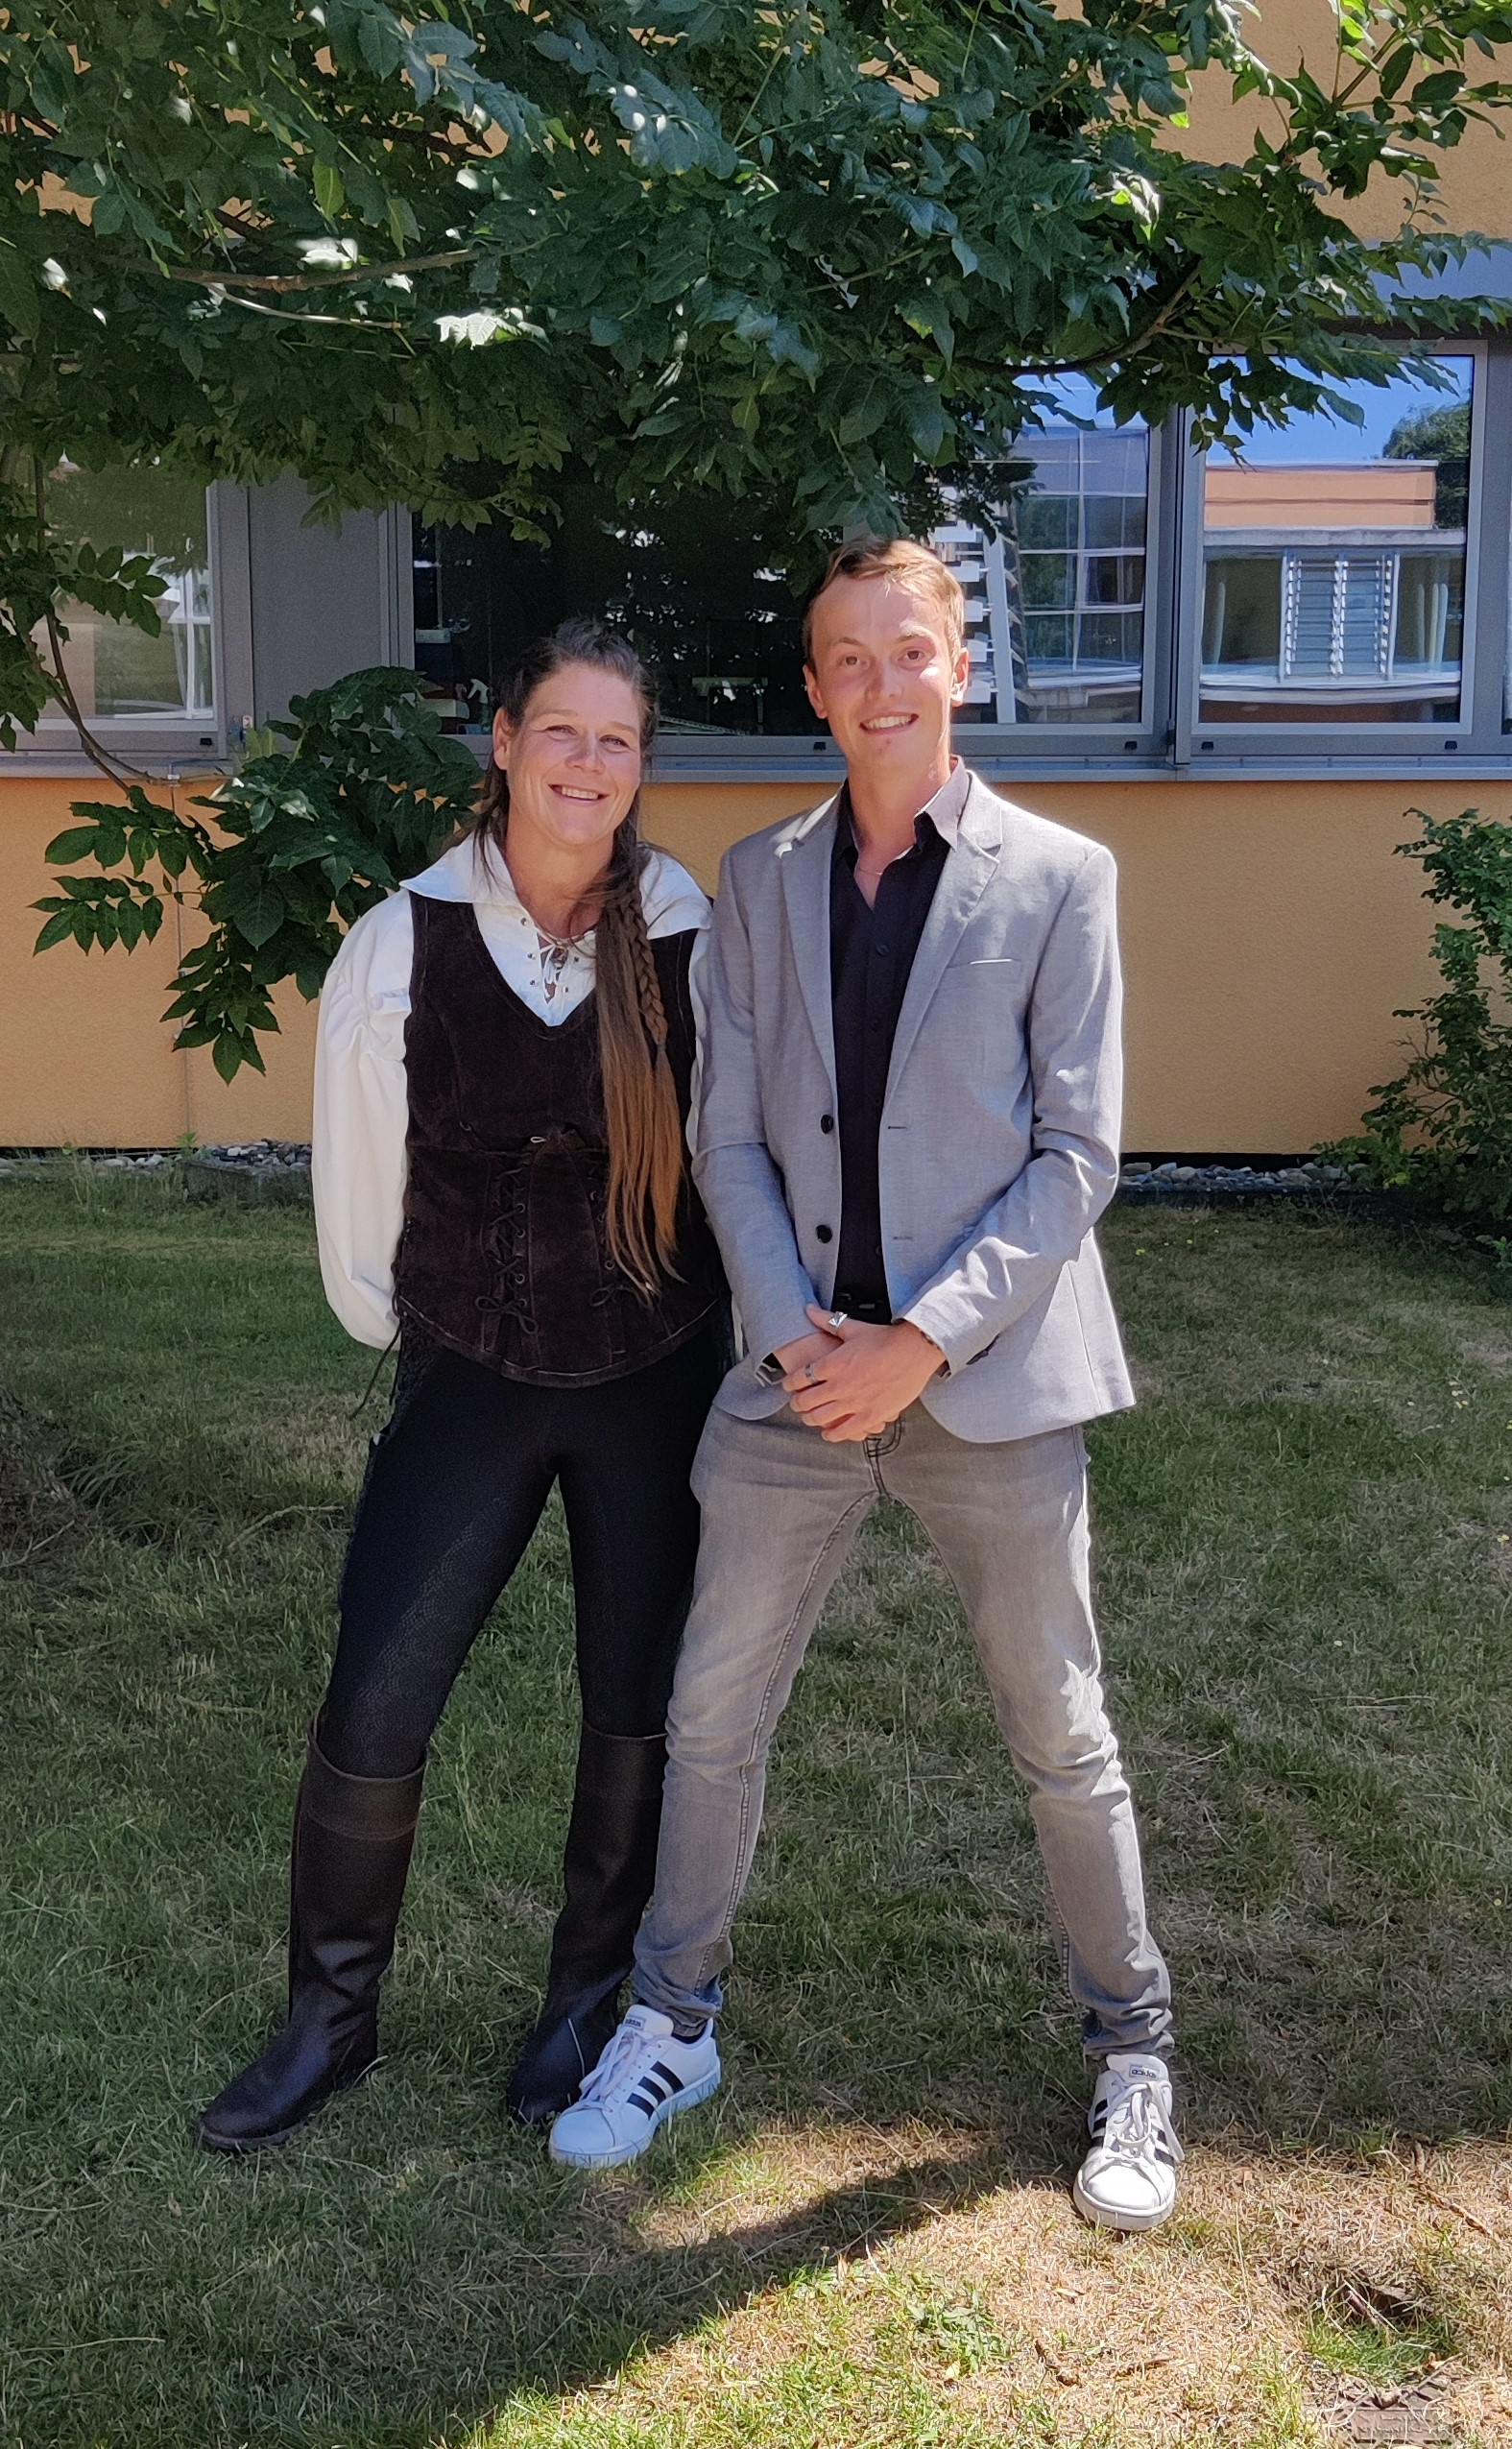  Klassenlehrerin Frau Siedle mit dem Preisträger Janosch Breitenmoser - das Bild wird mit Klick vergrößert 